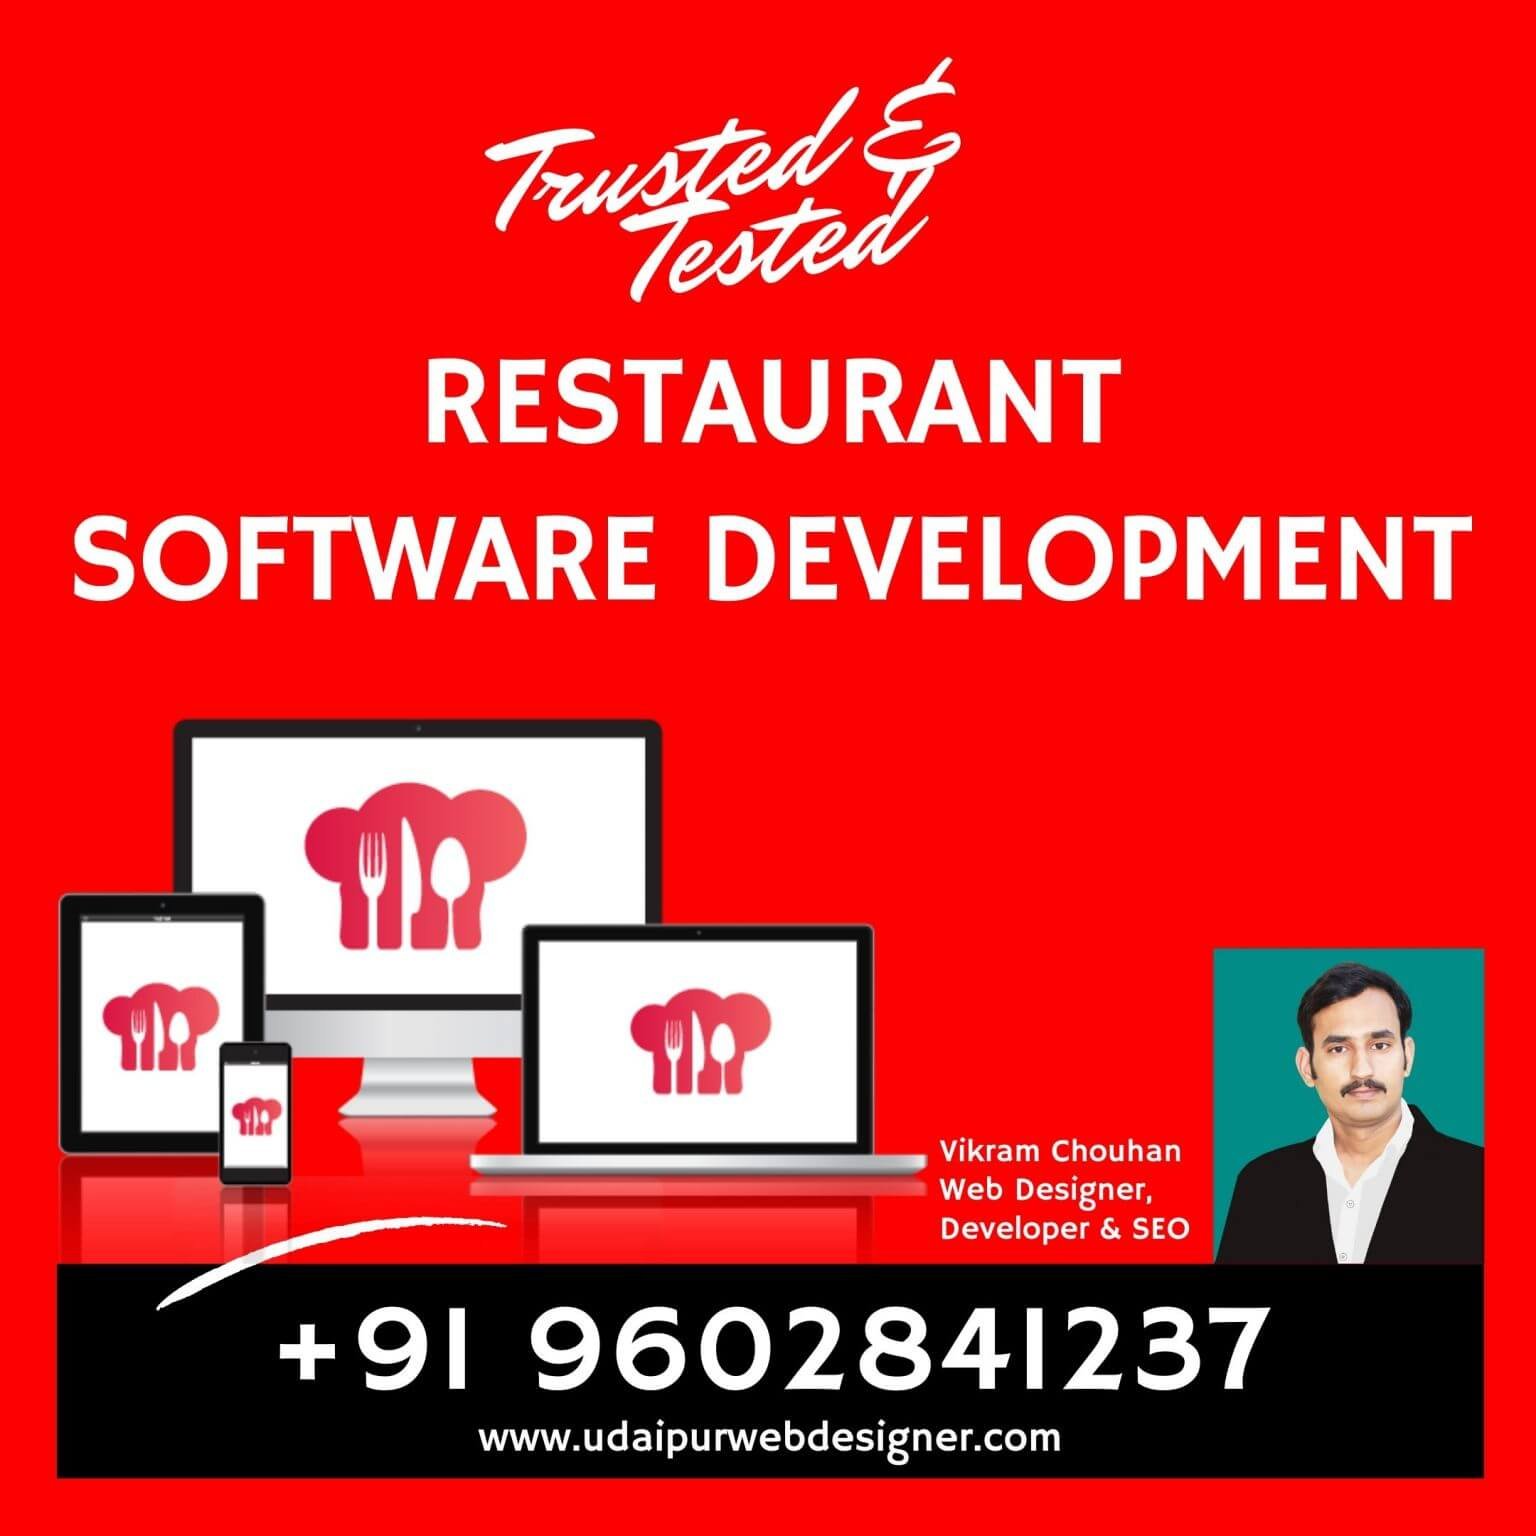 Restaurant-Software-Development-Udaipur-Rajasthan-India